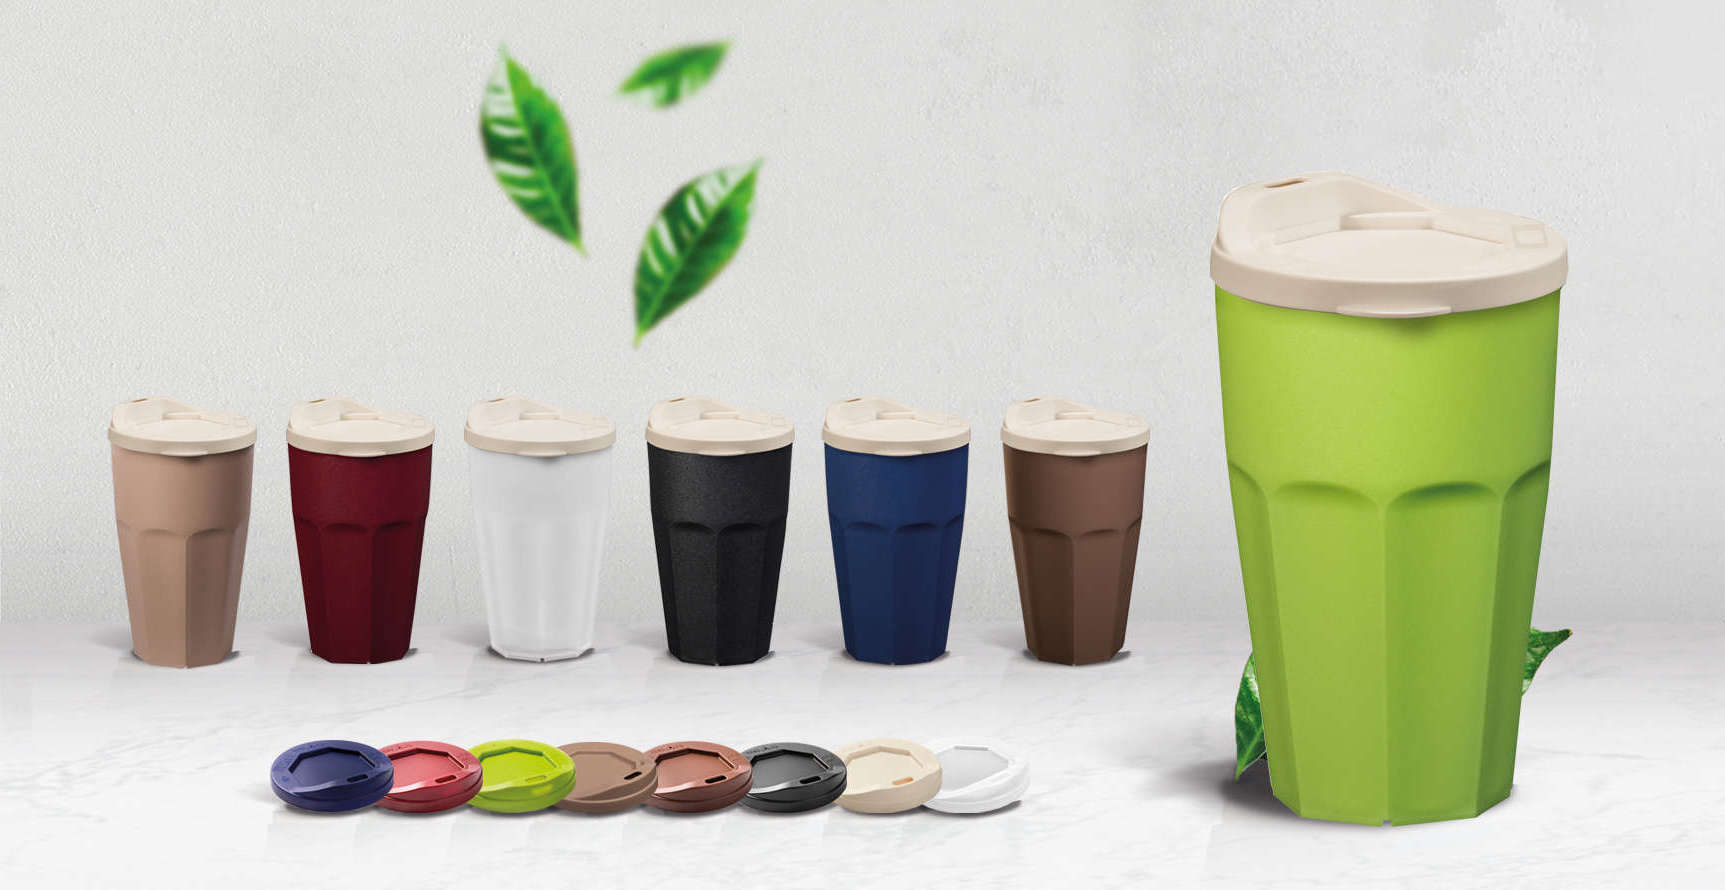 Kaffeebecher plastik mehrweg - Die ausgezeichnetesten Kaffeebecher plastik mehrweg ausführlich analysiert!